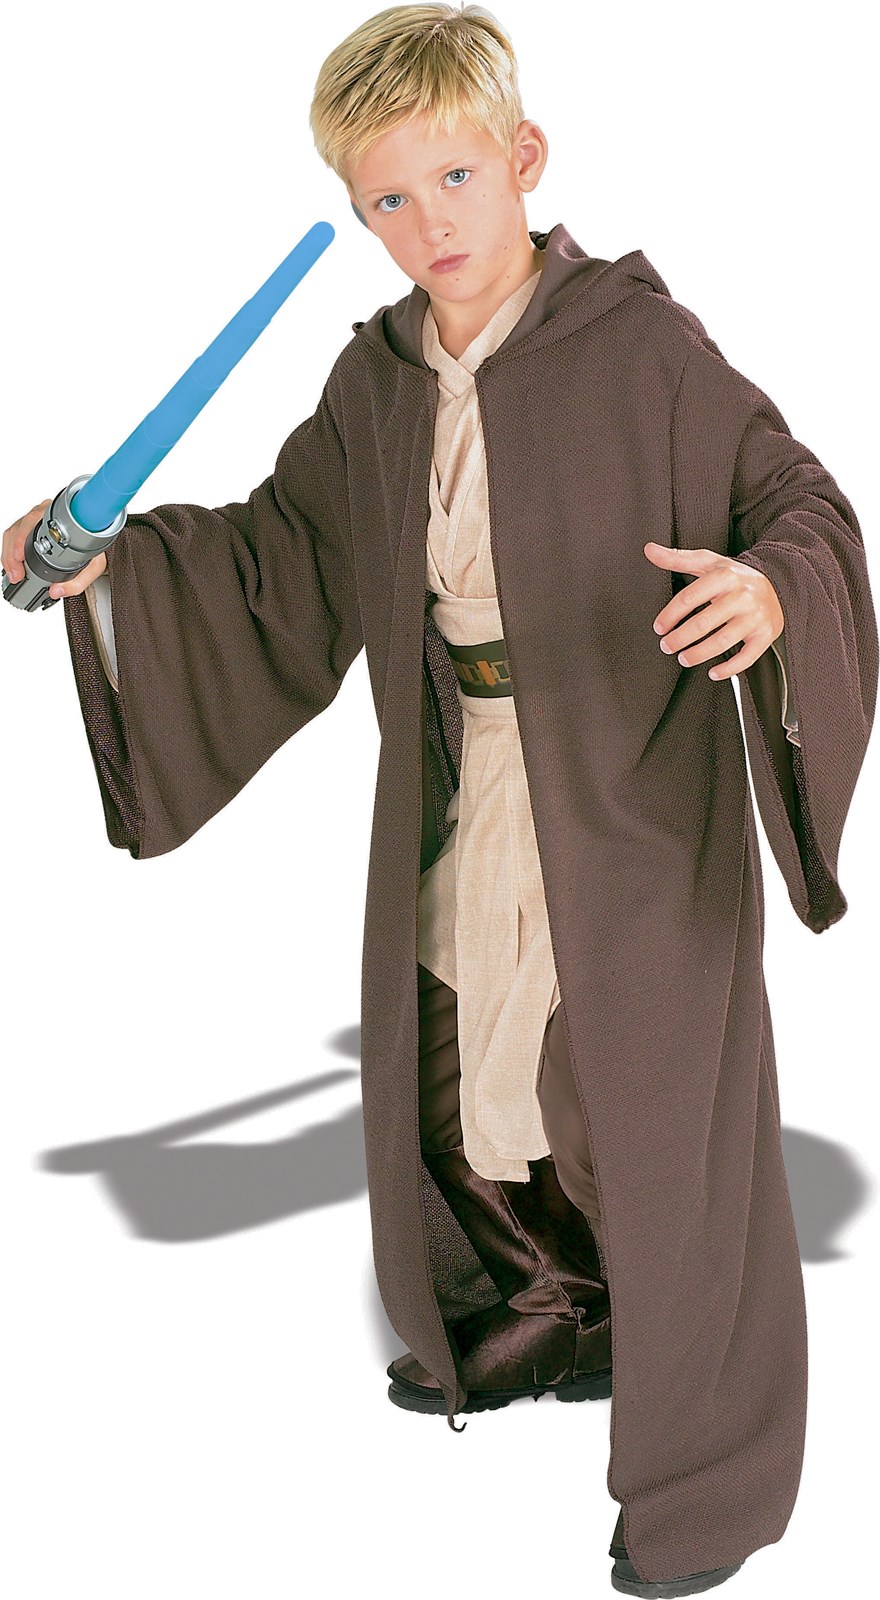 Jedi Robe Child Costume